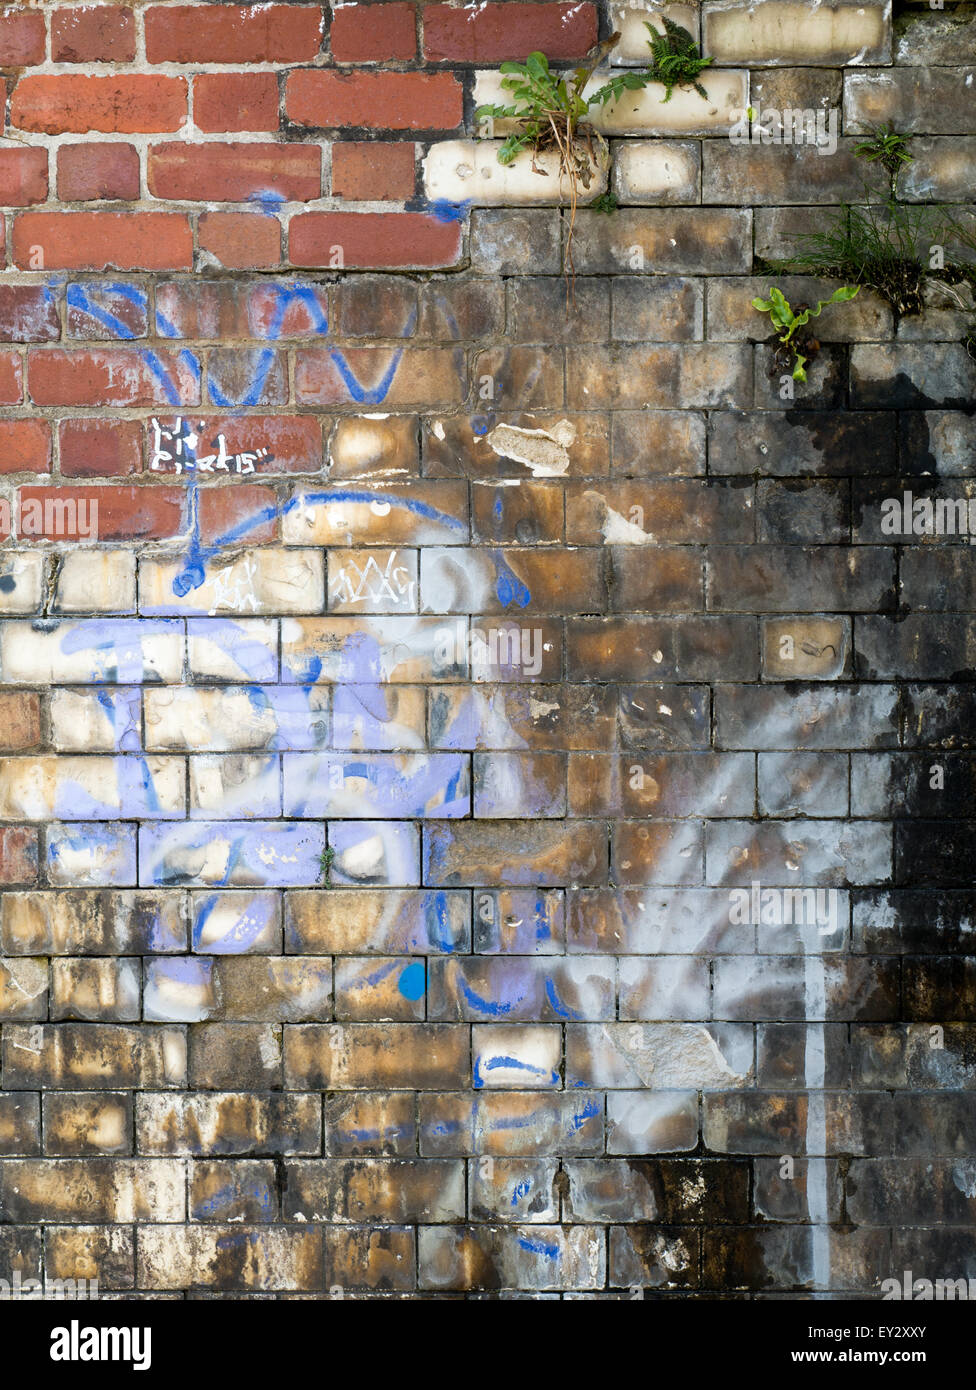 Graffiti on old brickwork Stock Photo